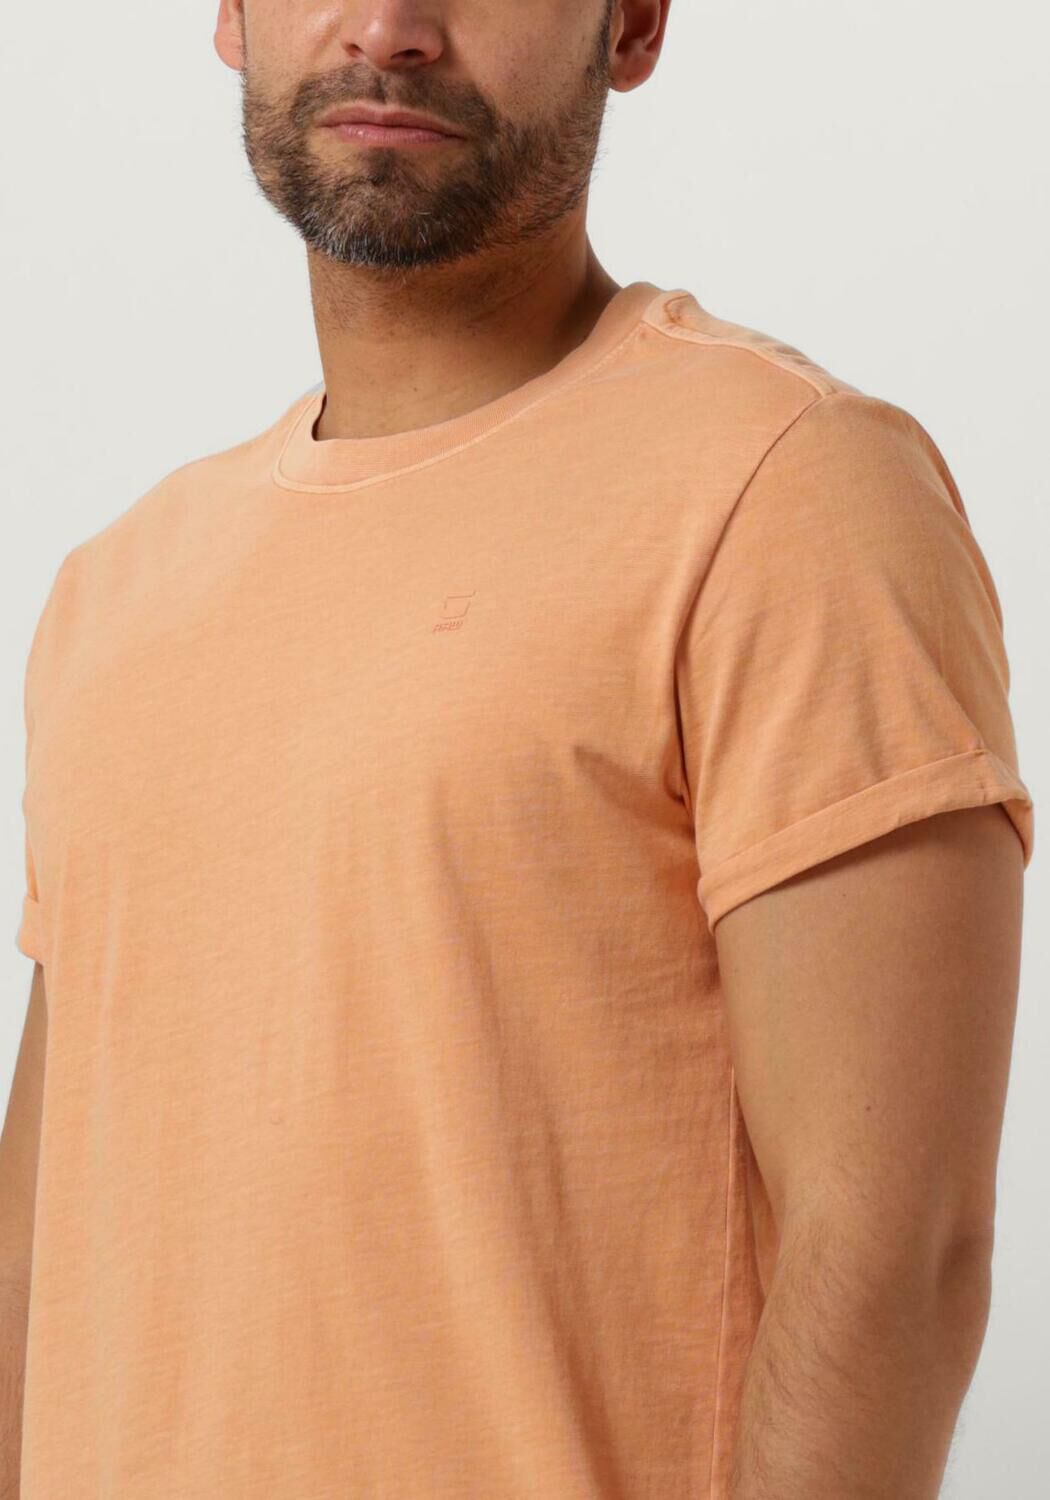 G-STAR RAW Heren Polo's & T-shirts Lash R T S s Oranje